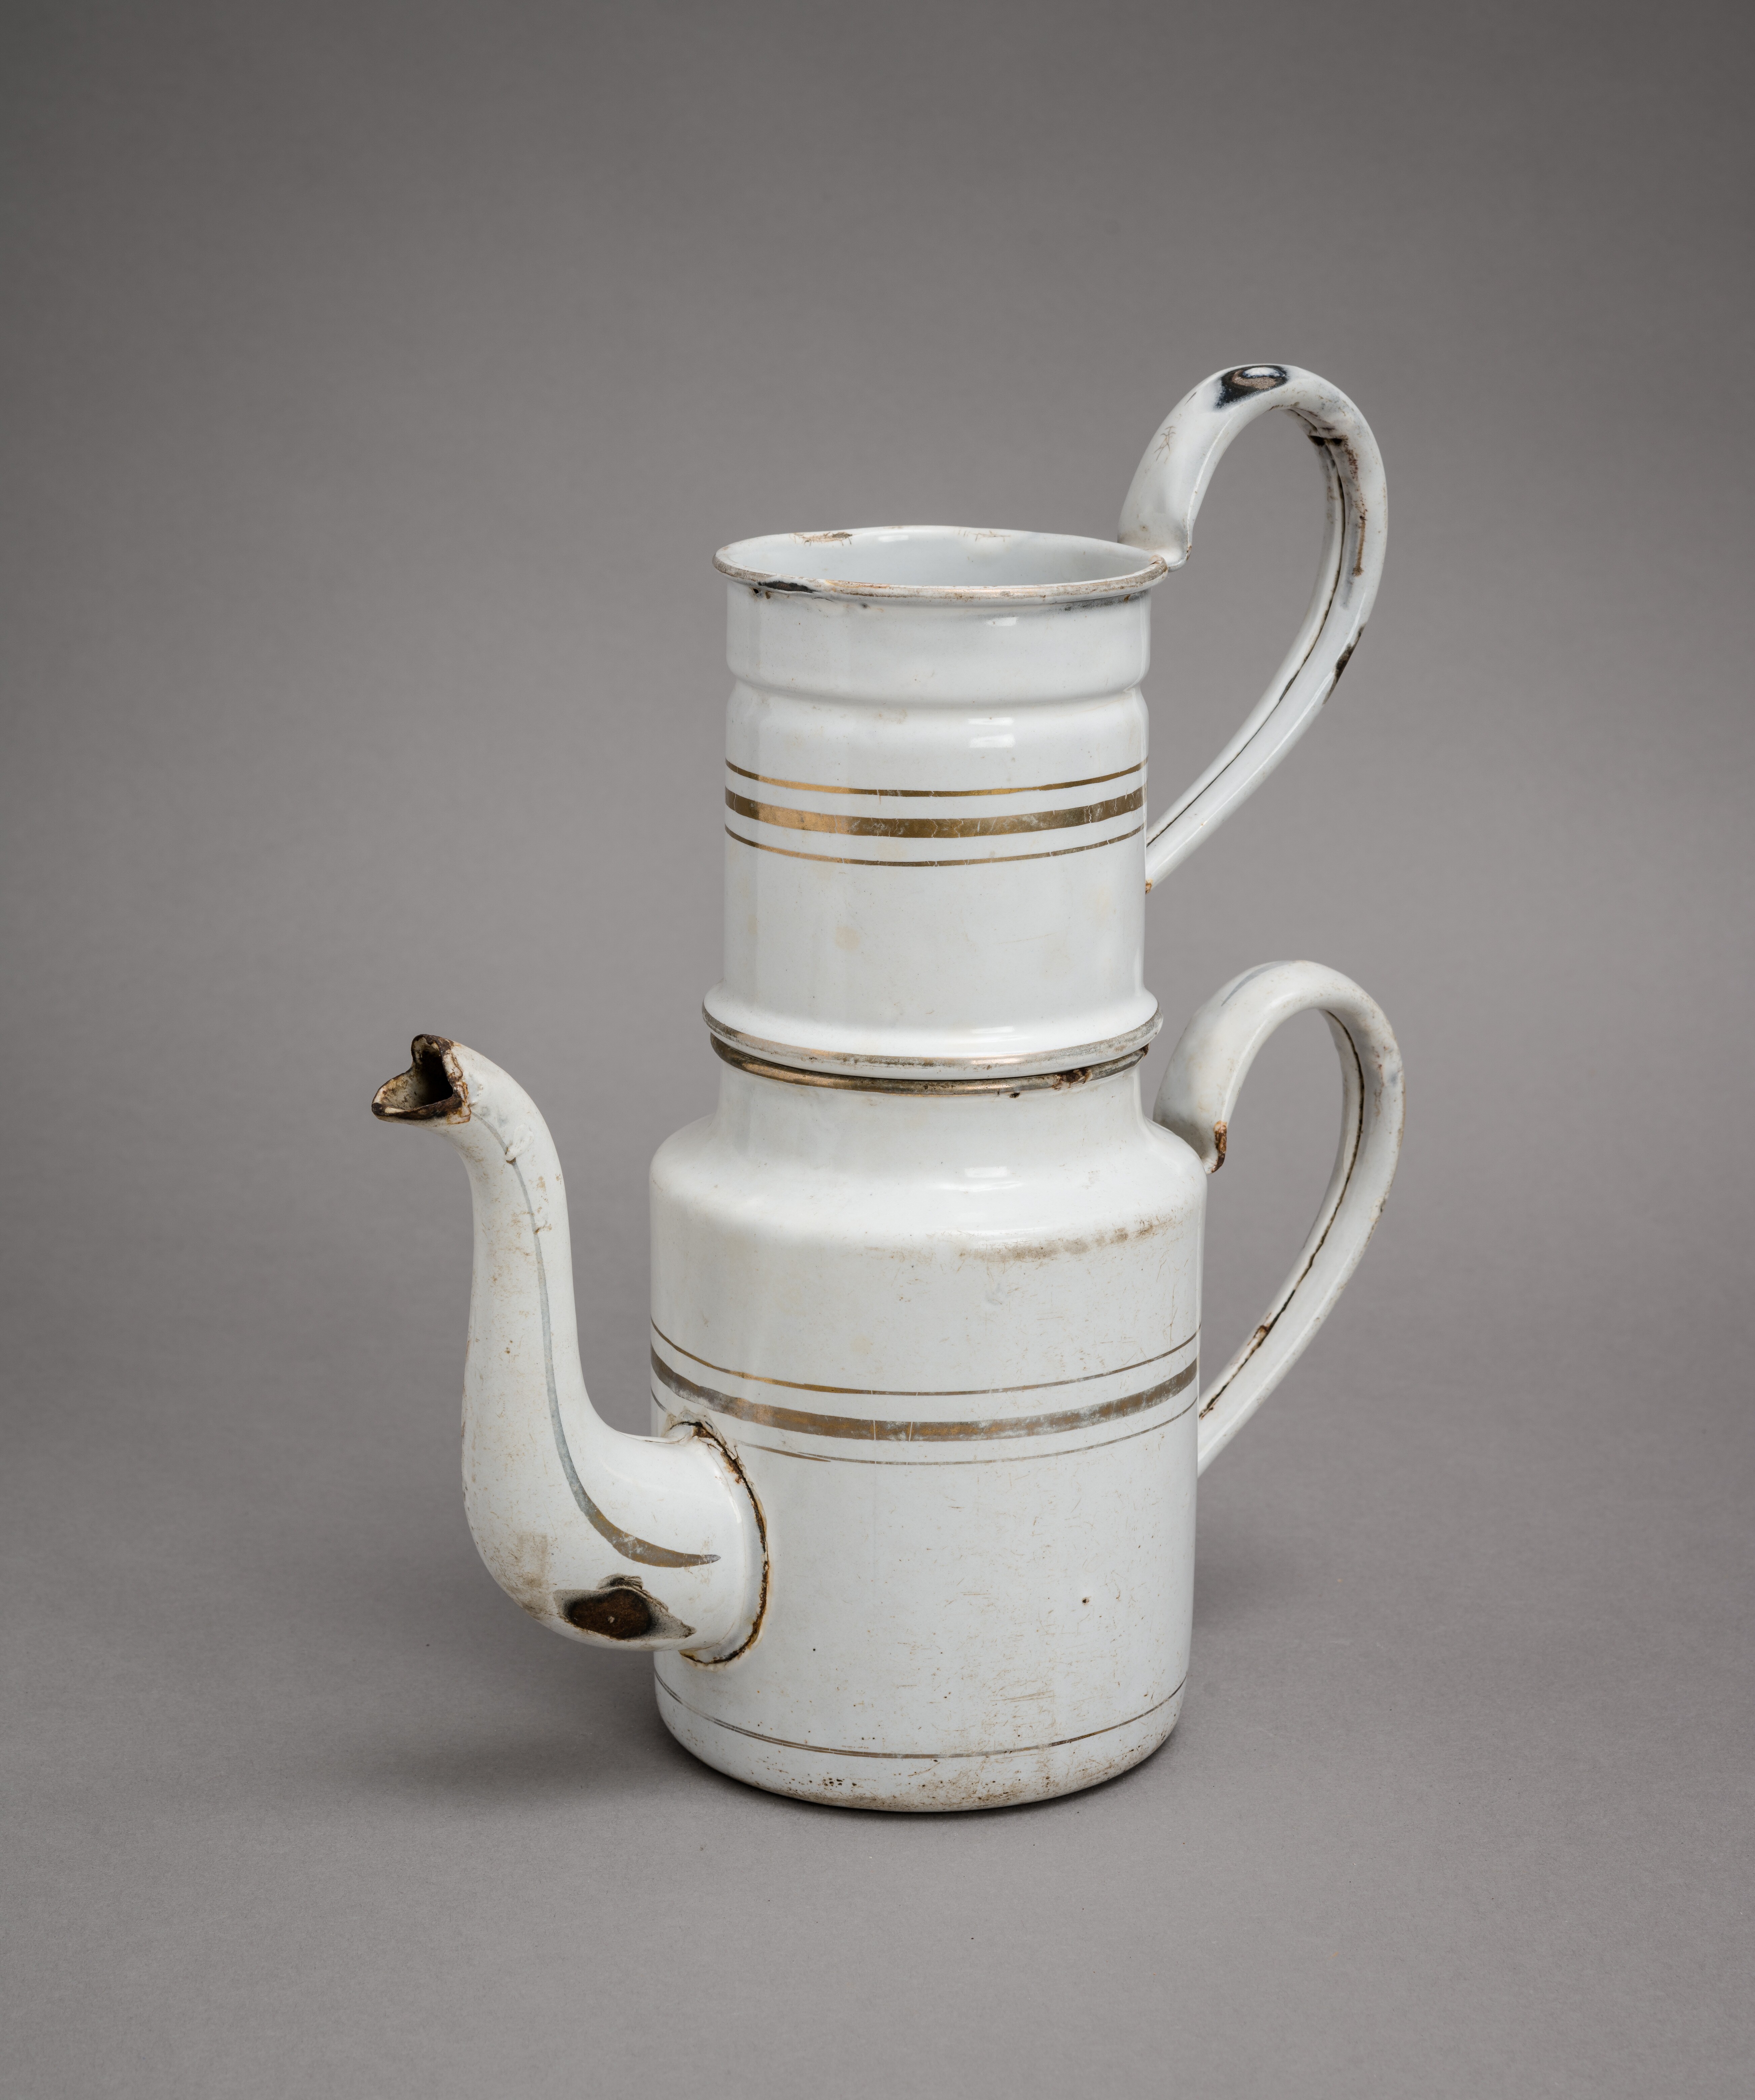 Kanna és szűrő (kávéfőző) (Bleyer Jakab Helytörténeti Gyűjtemény, Heimatmuseum CC BY-NC-SA)